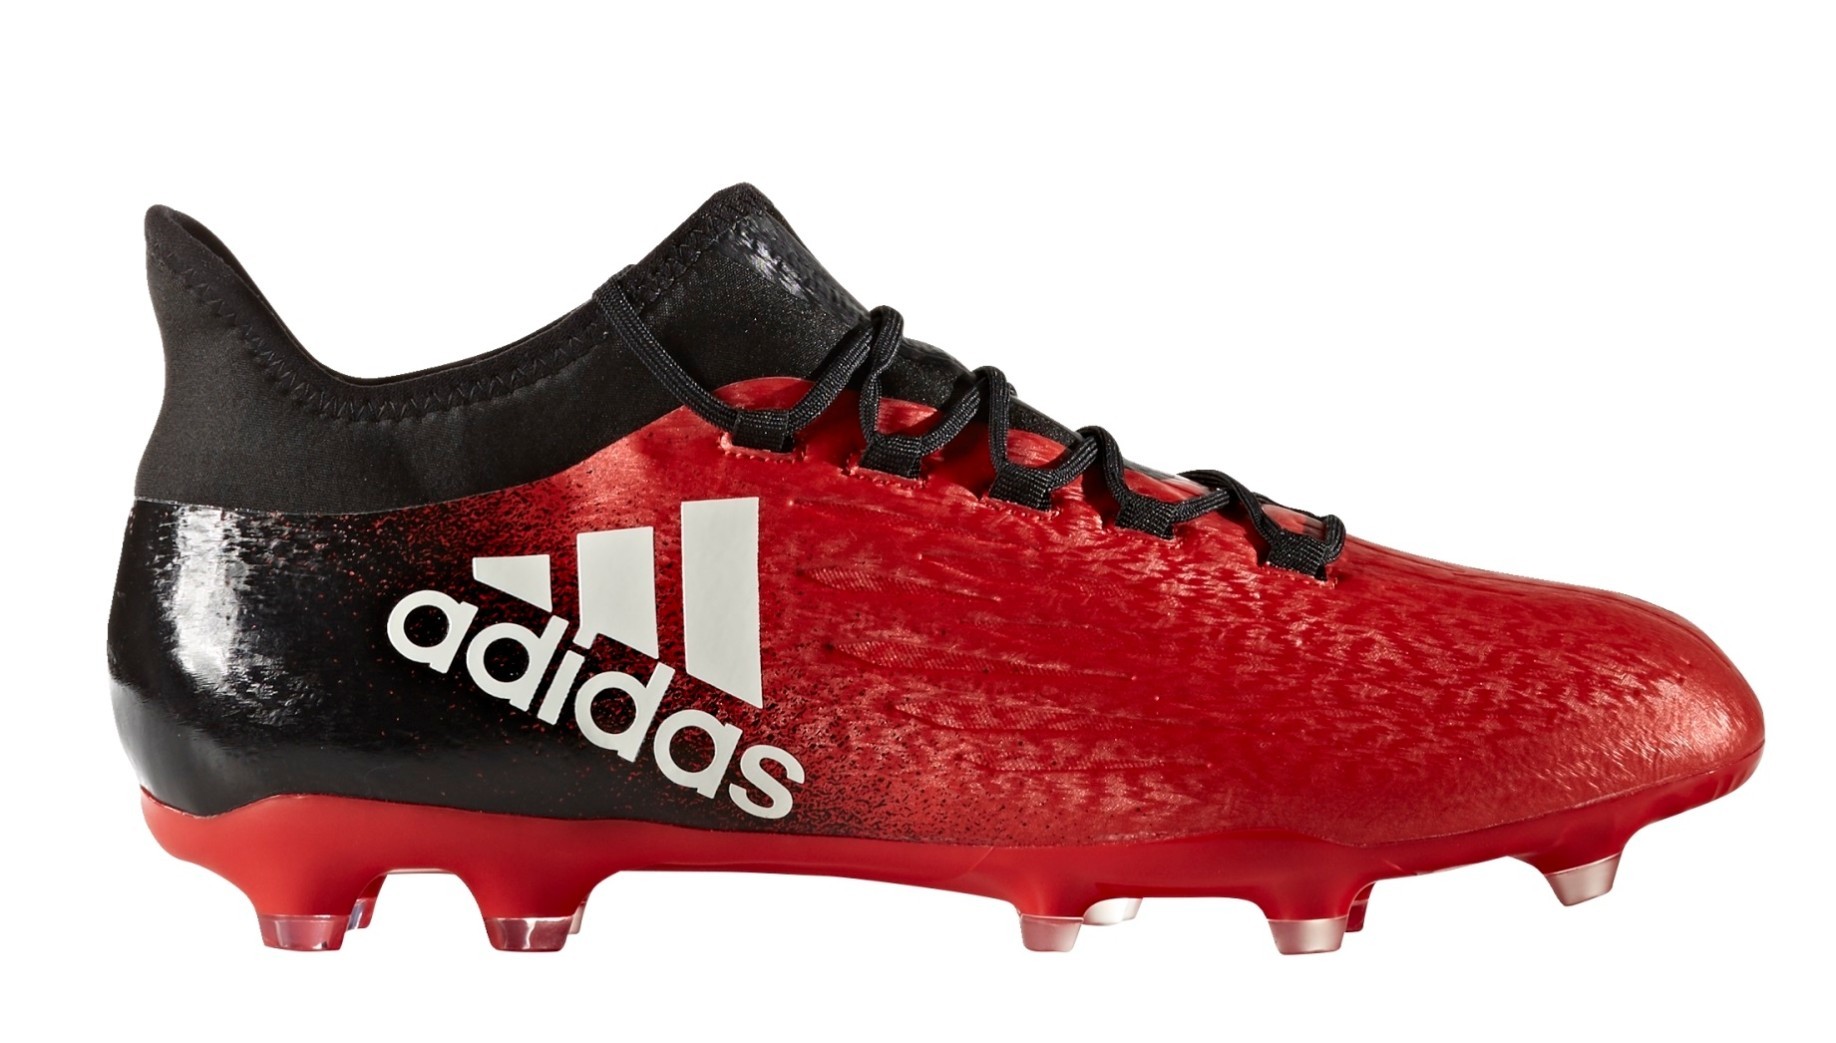 Botas de Adidas X 16,2 colore rojo negro Adidas - SportIT.com